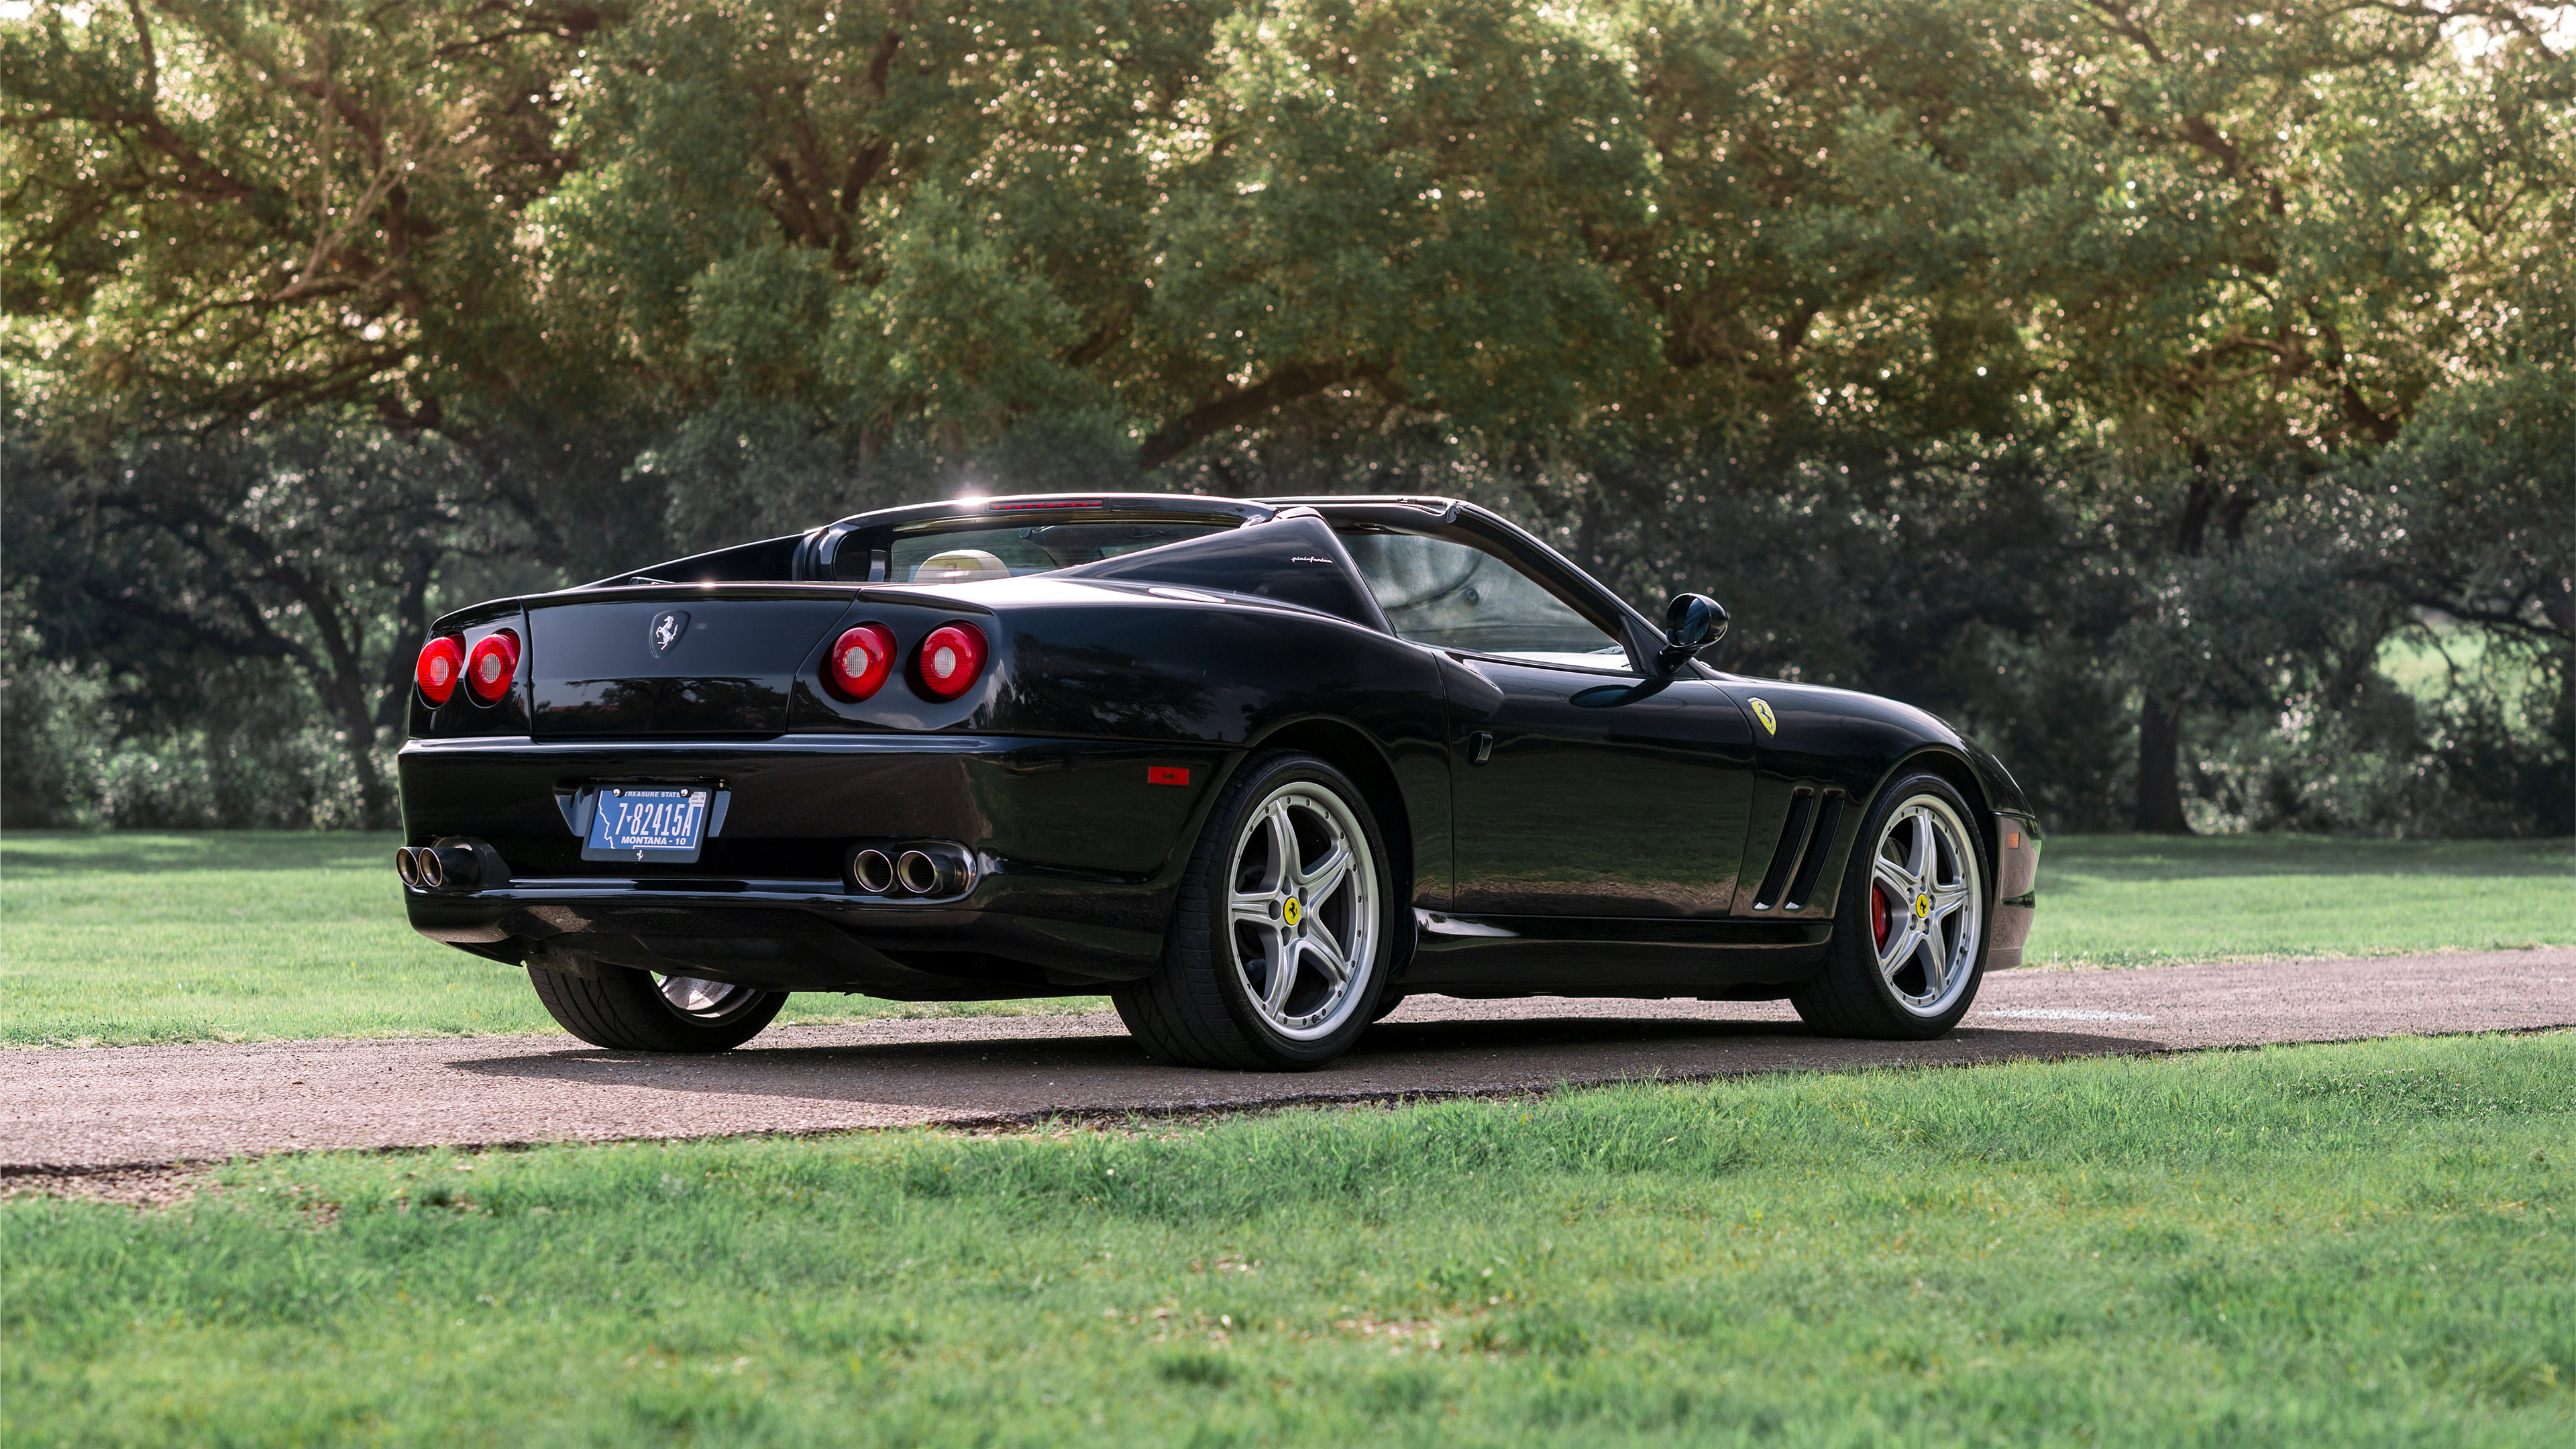  2005 Ferrari 575M Superamerica Wallpaper.